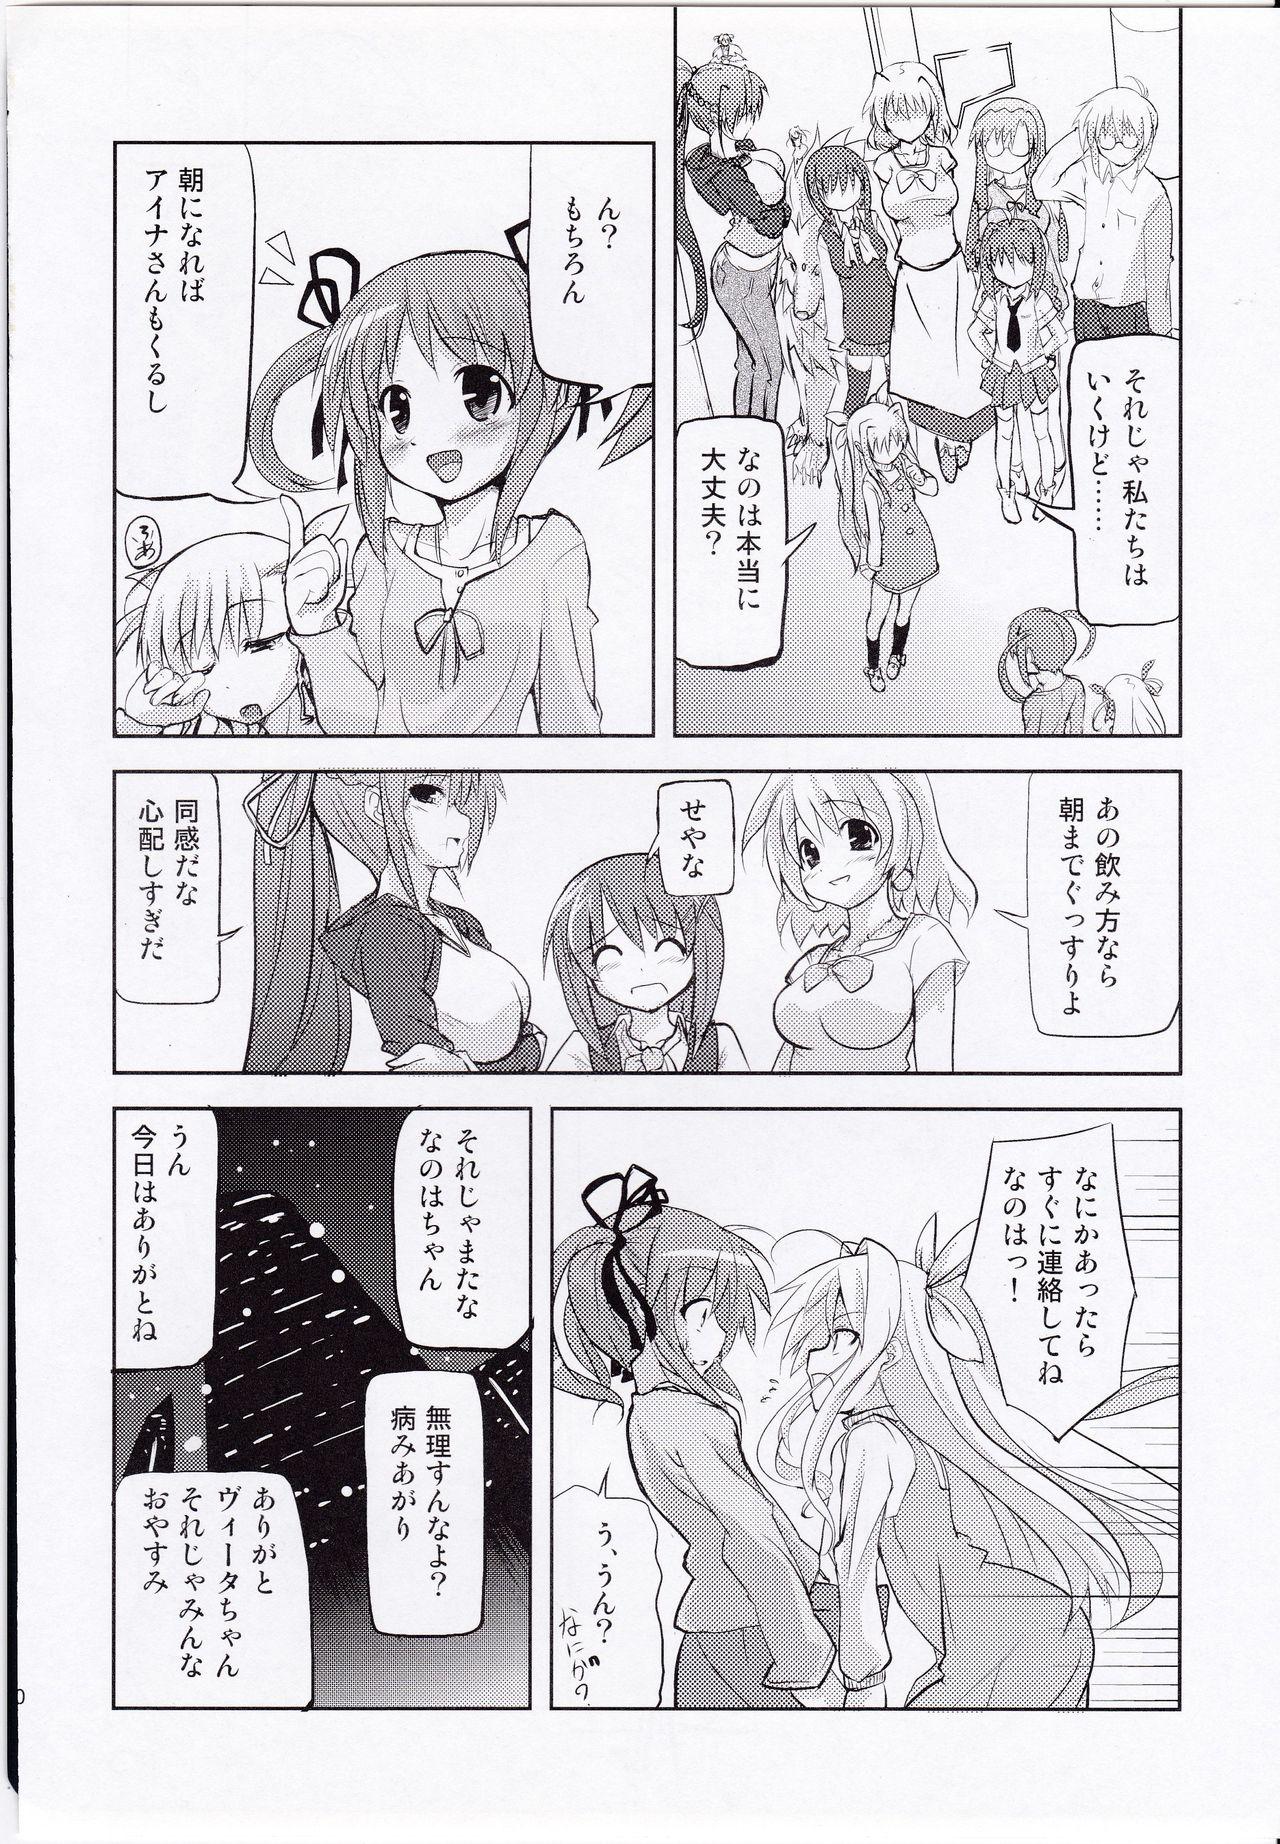 Animation Chrono-kun Goranshin. - Mahou shoujo lyrical nanoha Nurse - Page 10